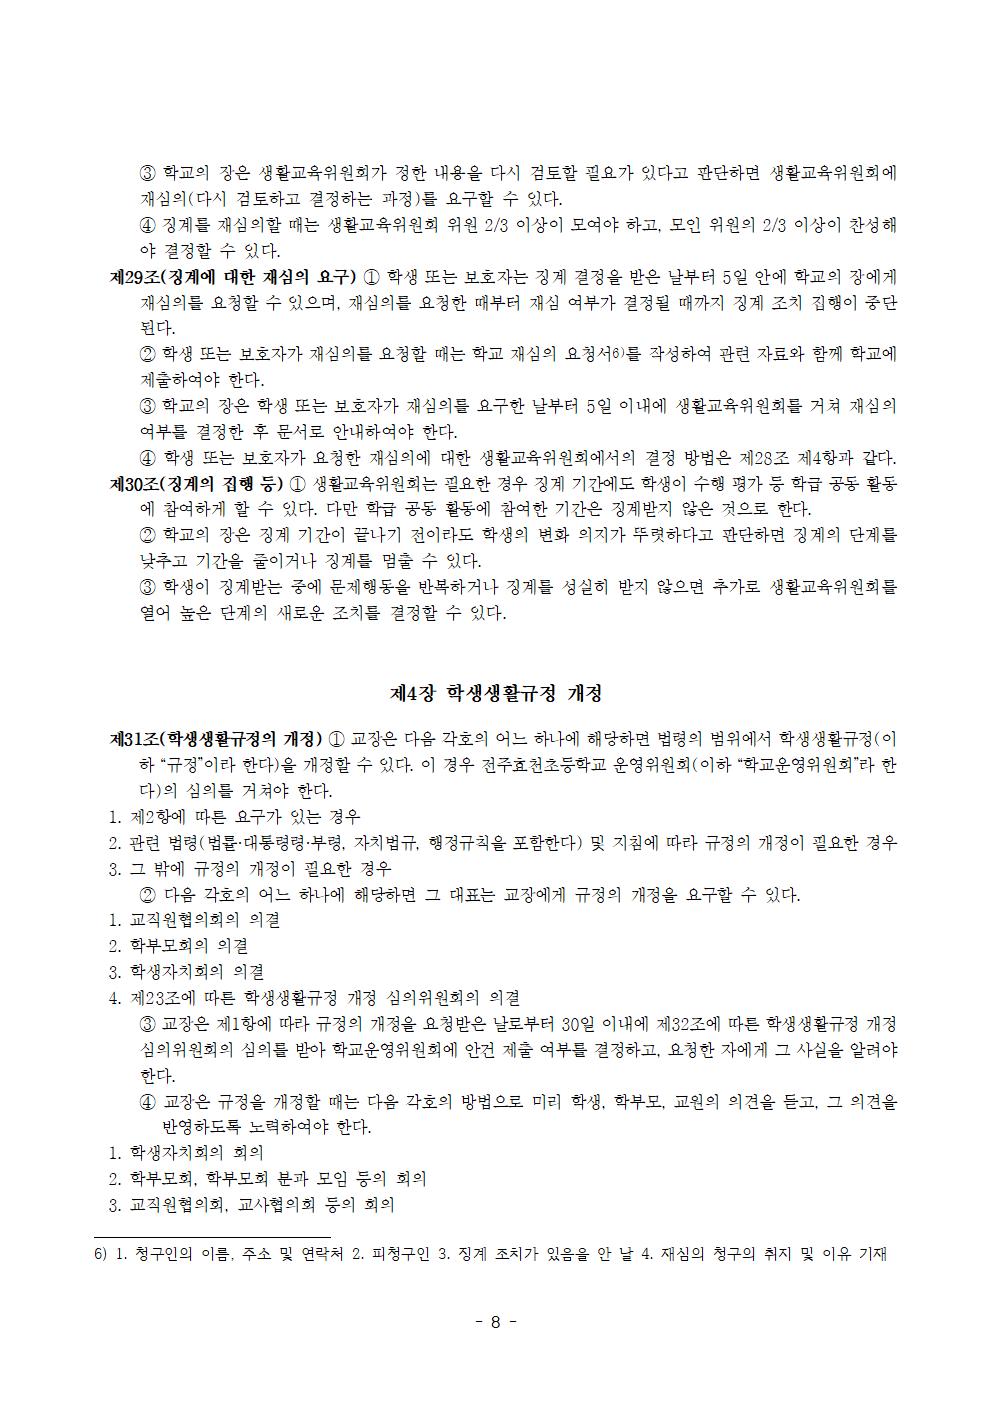 전주효천초등학교 학생의 학교생활에 관한 규정(전부개정, 23.12.22. 공포)008